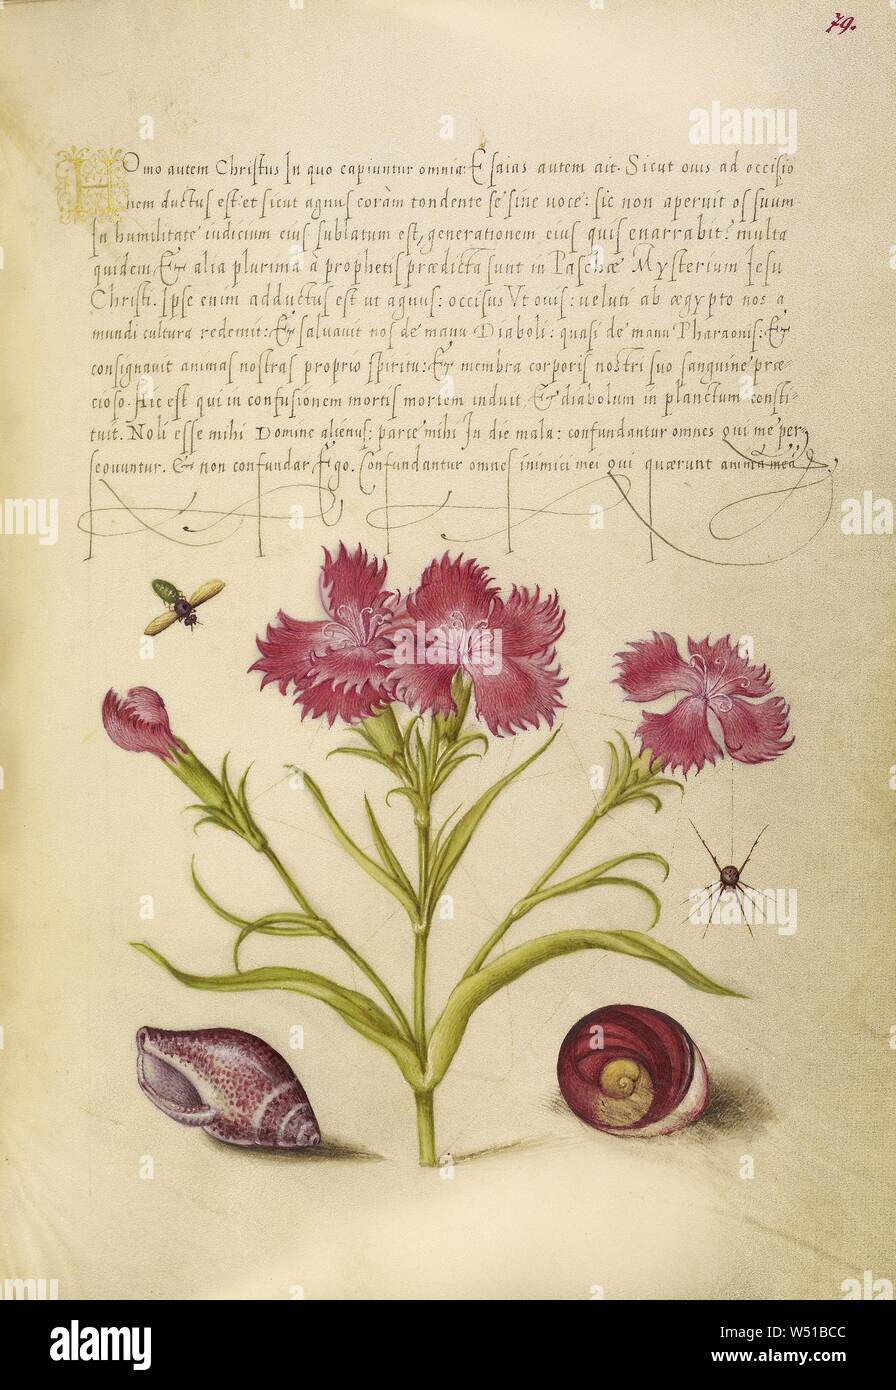 Sweet William, d'insectes, d'araignées, de mollusques marins, et des yeux de Santa Lucia, Joris Hoefnagel (/ hongrois, 1542 - 1600), et Georg Bocskay (Hongrois, est mort en 1575), Vienne, Autriche, 1561 - 1562, 1591 - 1596 ajouter l'éclairage, d'aquarelles, d'or et d'argent, peinture et encre sur parchemin, feuille : 16,6 x 12,4 cm (6 9/16 x 4 7/8 po Banque D'Images